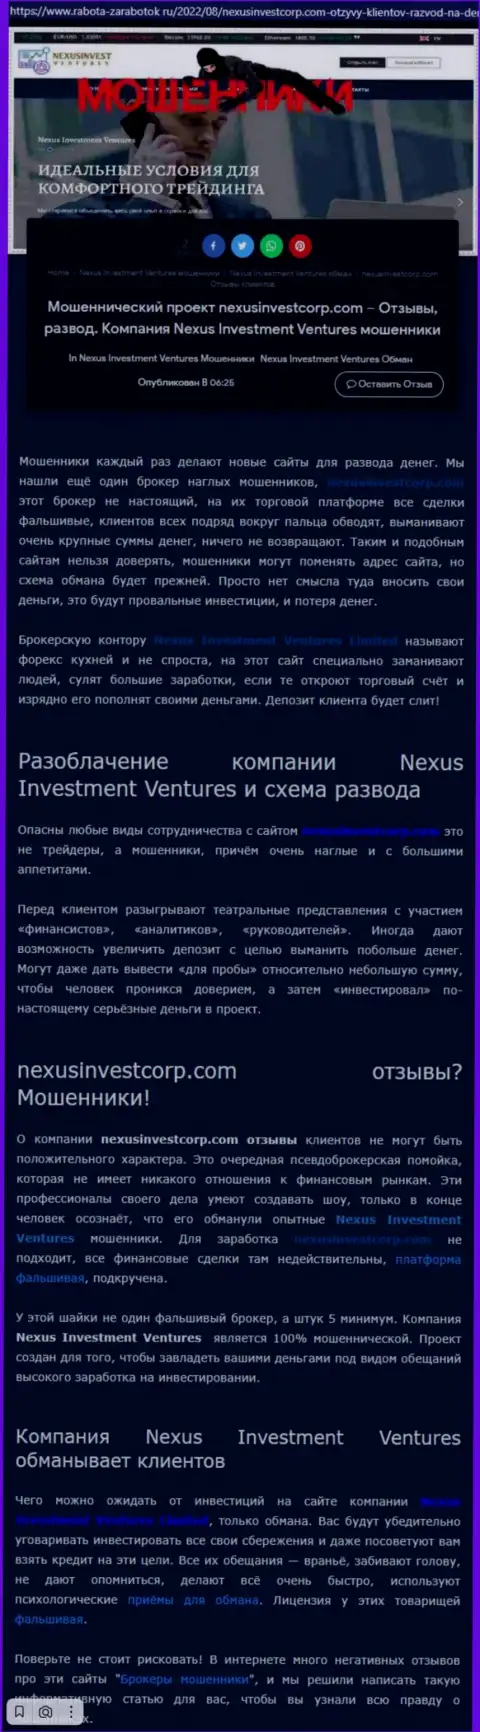 Если не хотите стать очередной жертвой Nexus Invest, бегите от них подальше (обзор деятельности)